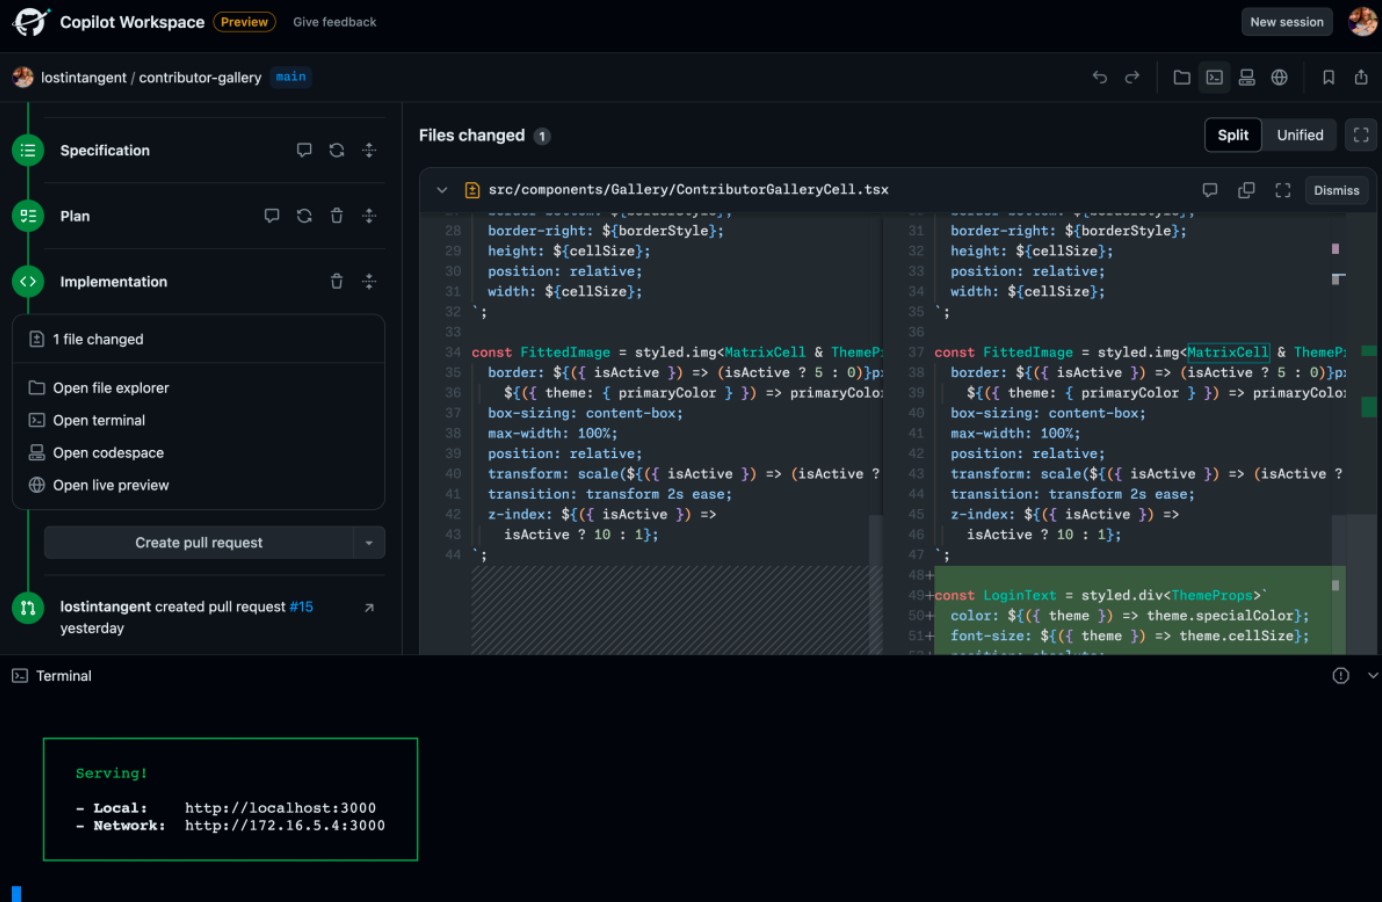 GitHub lanzará la próxima semana Copilot Workplace — un asistente de IA para desarrolladores